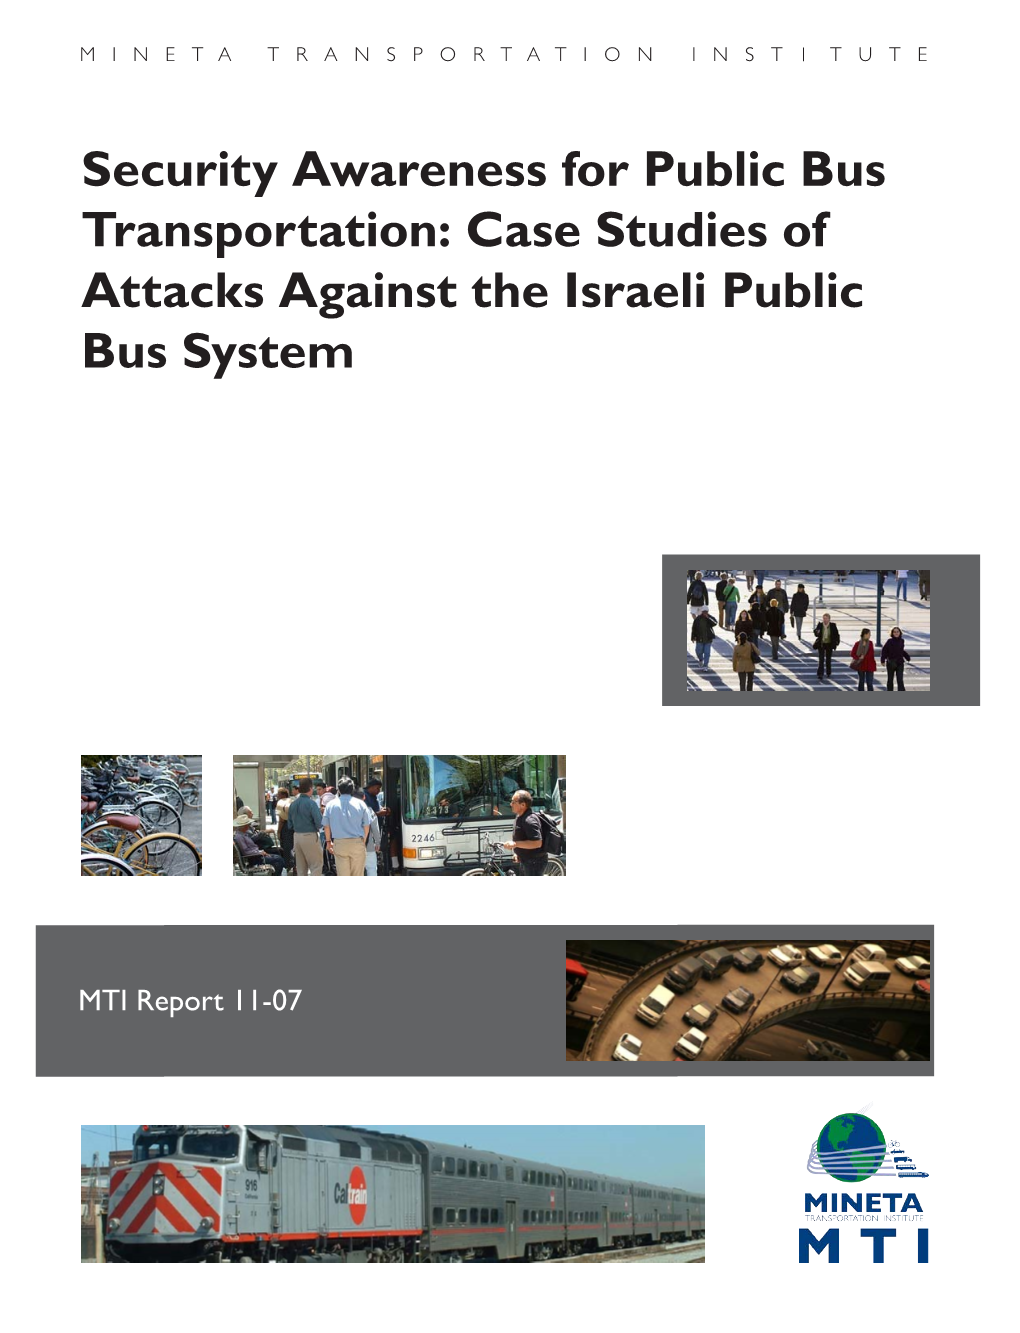 Case Studies of Attacks Against the Israeli Public Bus System